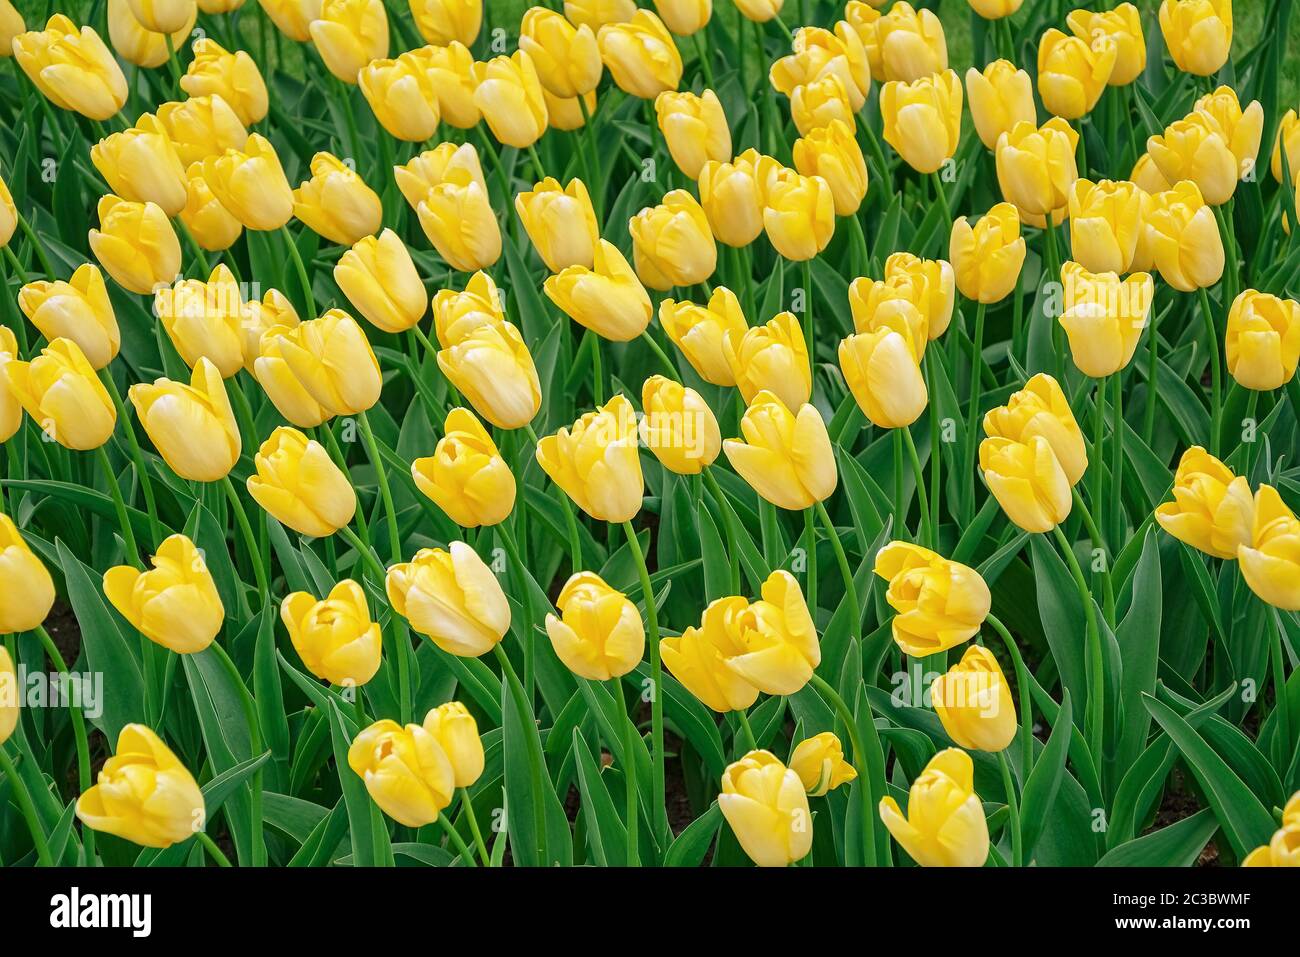 Flowerbed of tulips in the garden Stock Photo